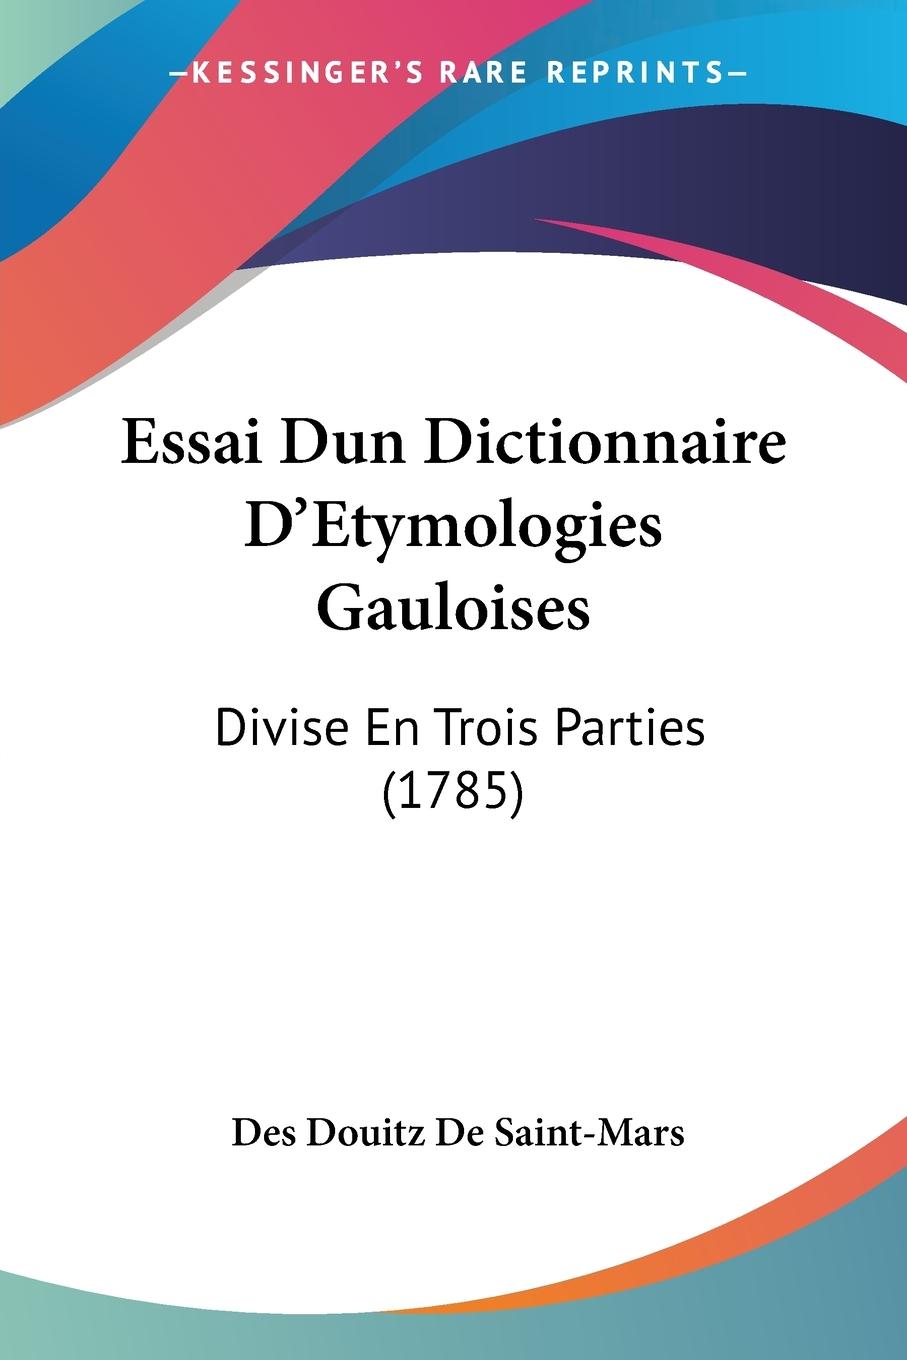 Essai Dun Dictionnaire D Etymologies Gauloises - De Saint-Mars, Des Douitz